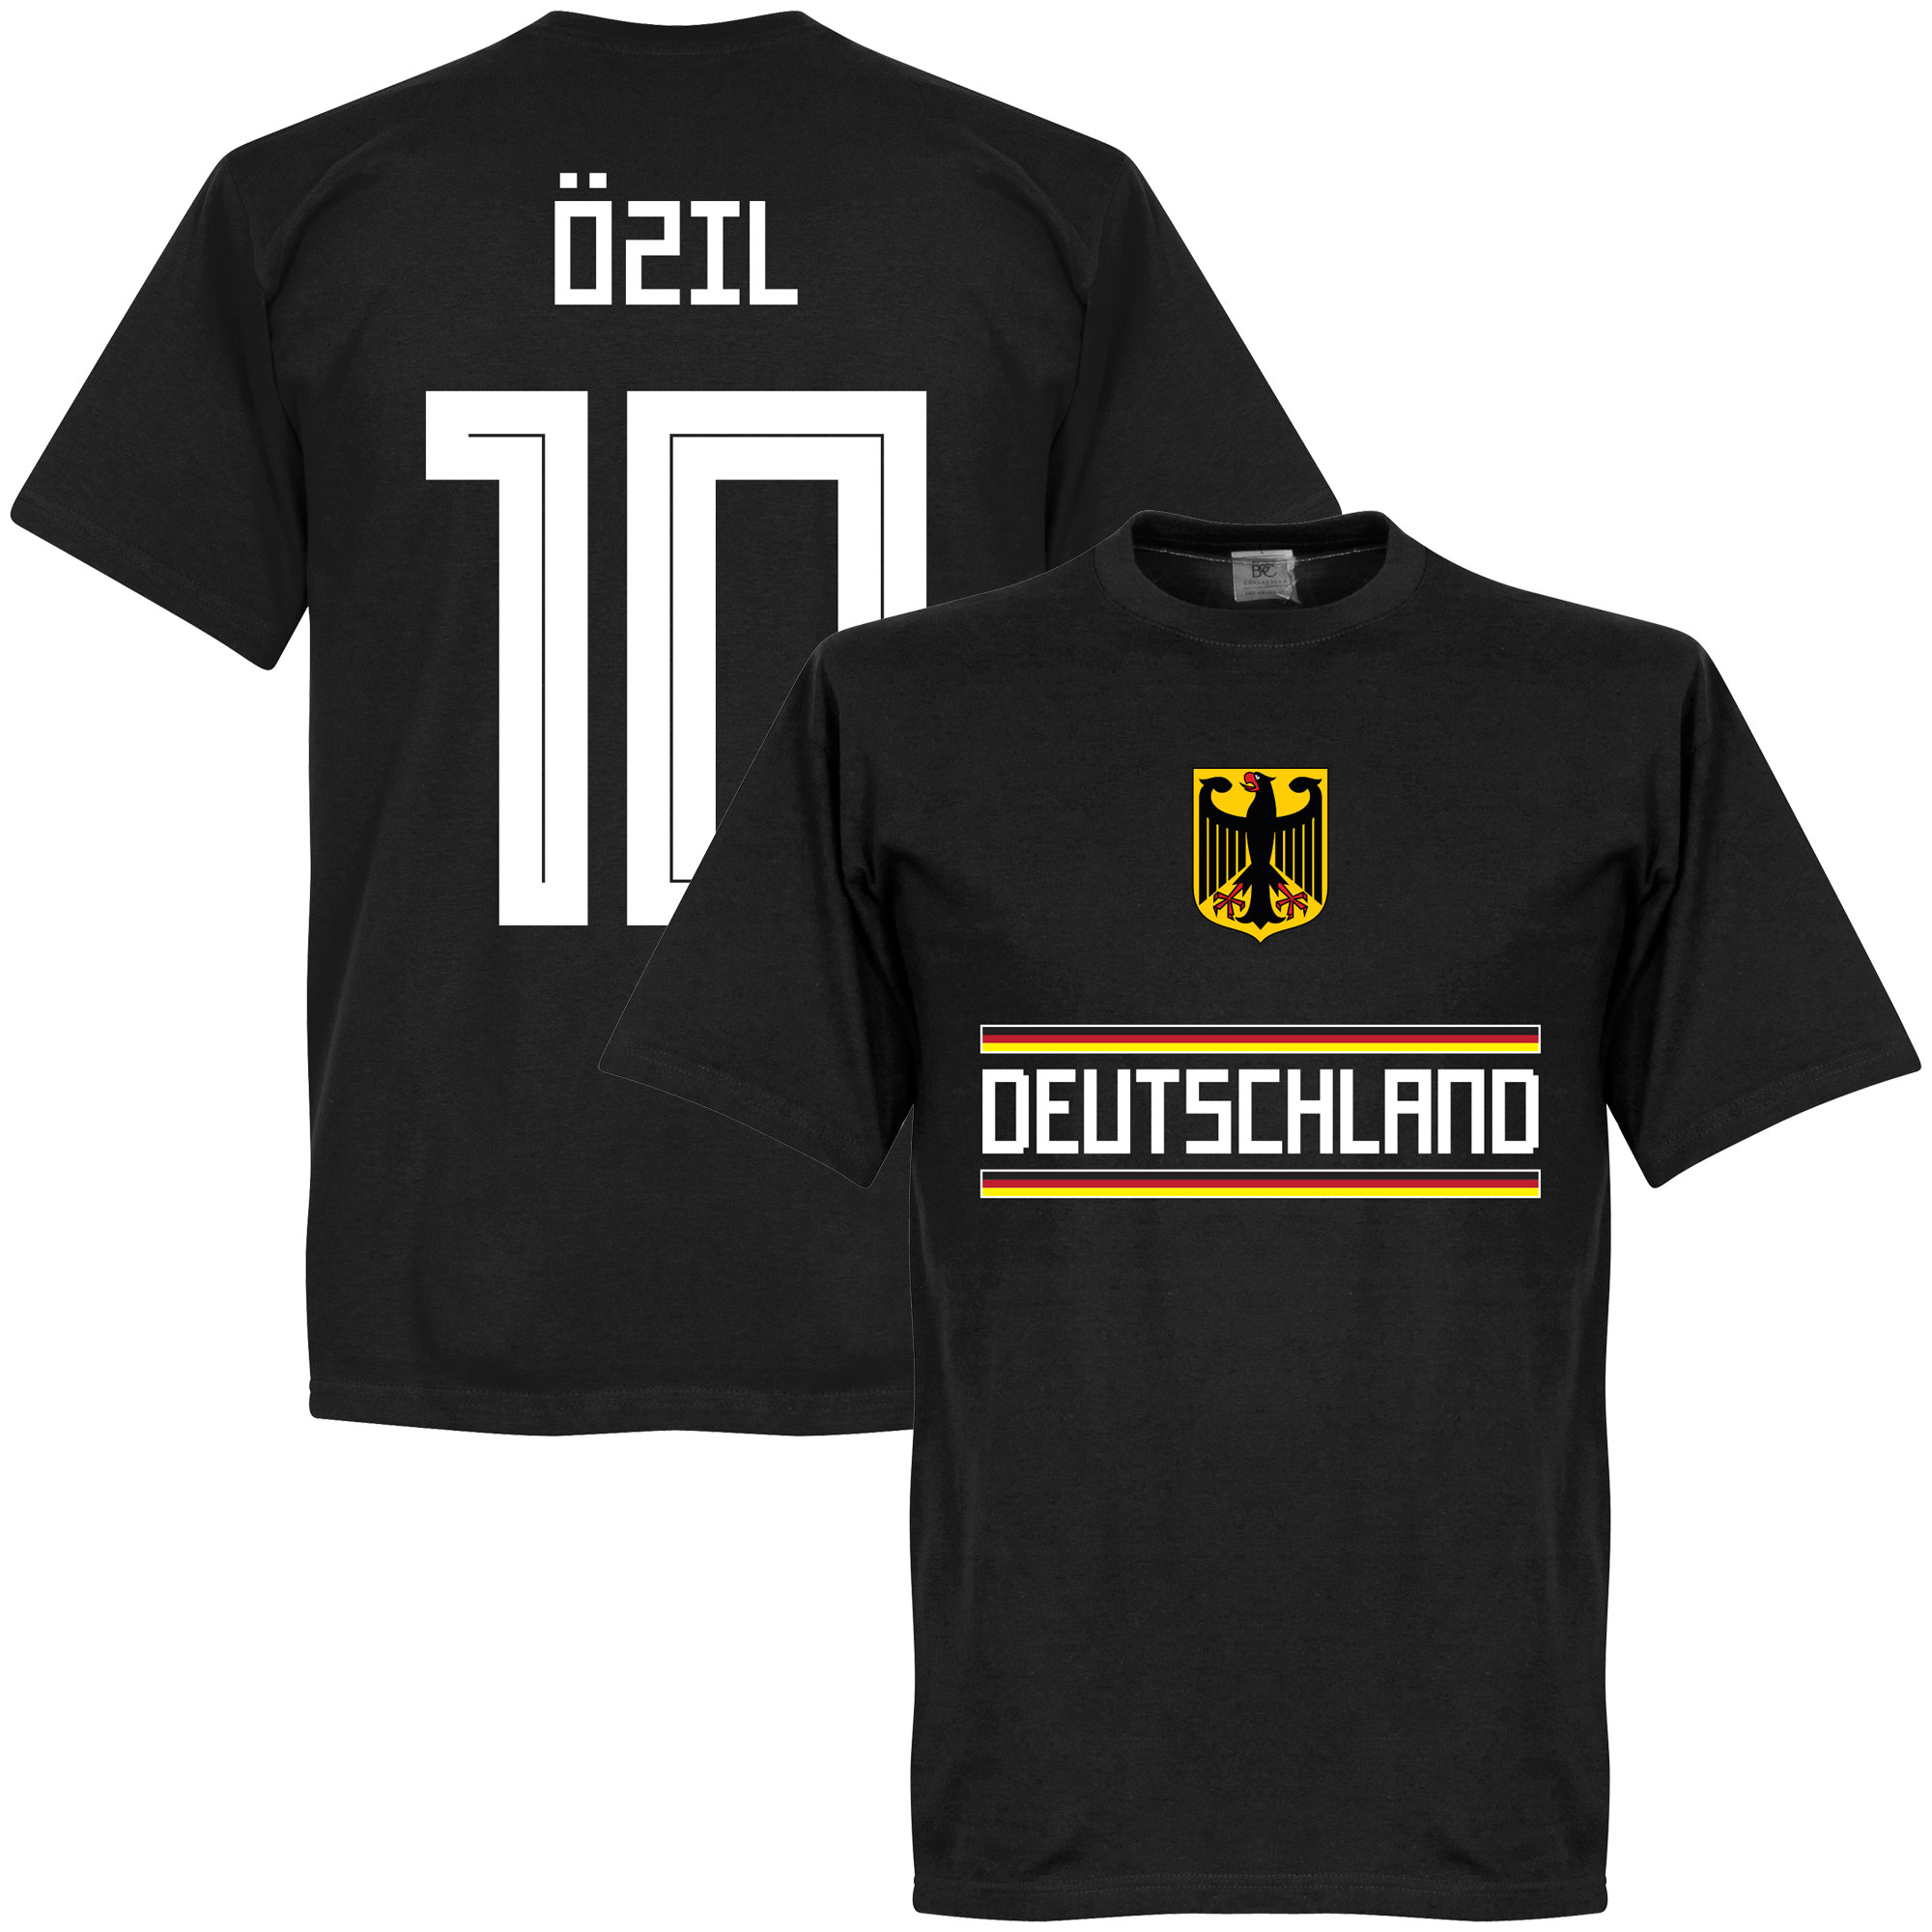 DuitslandÖzil 10 Team T-Shirt  - XL